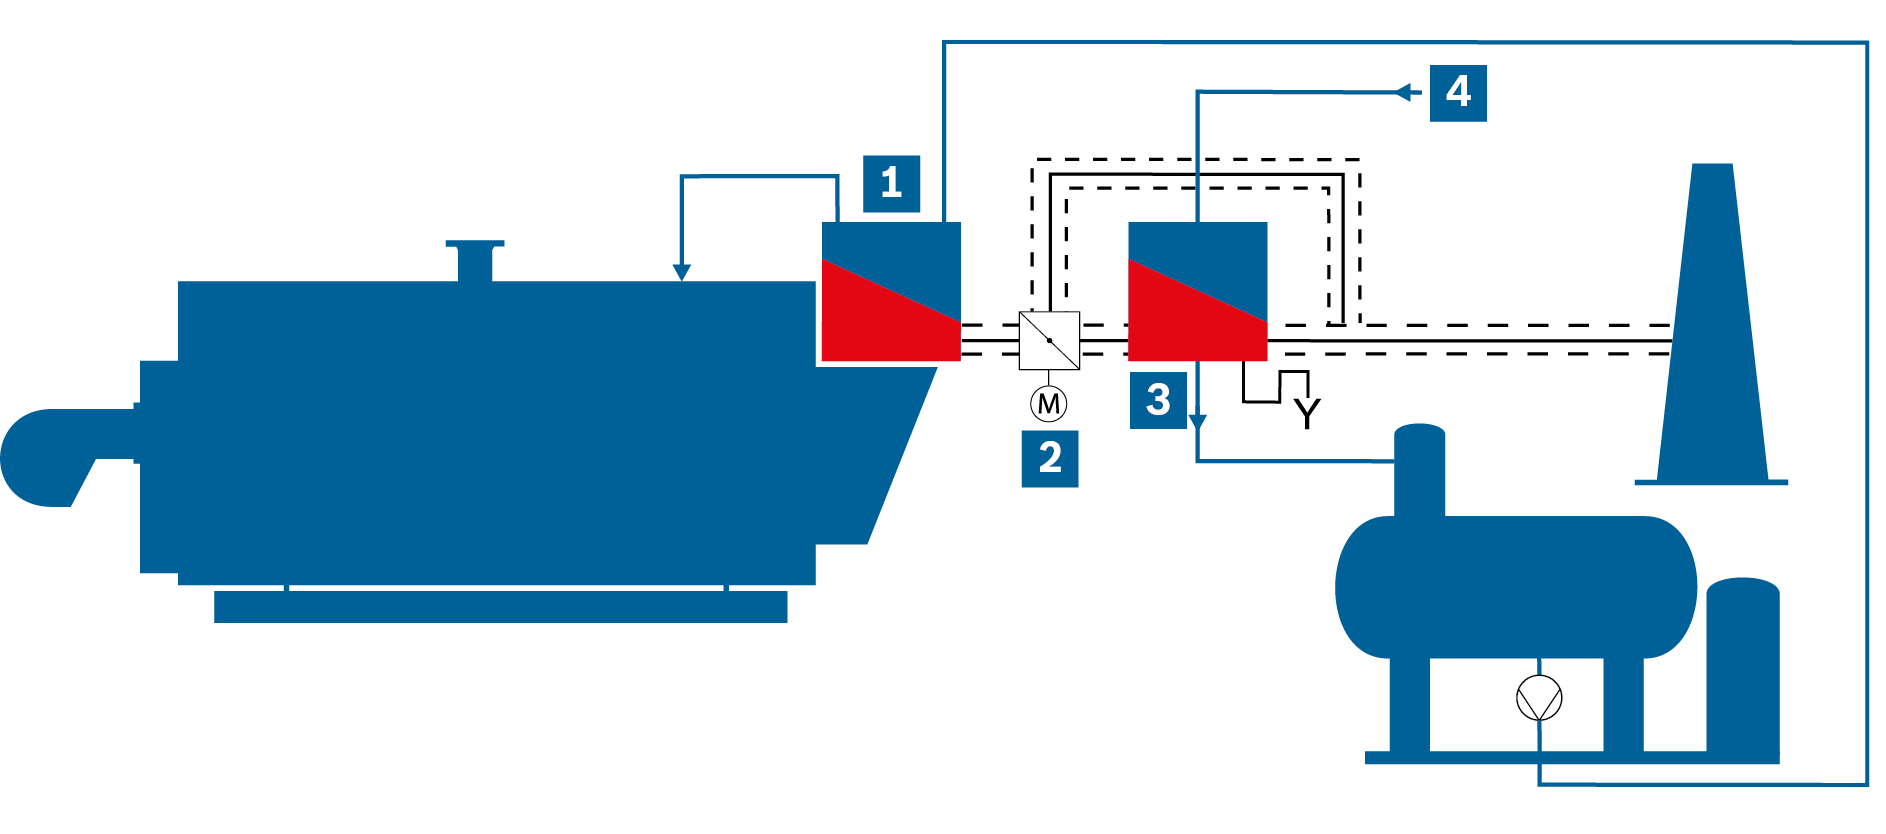 Uproszczony schemat kotłowni parowej z ekonomizerem zintegrowanym i zainstalowanym za kotłem ekonomizerem kondensacyjnym